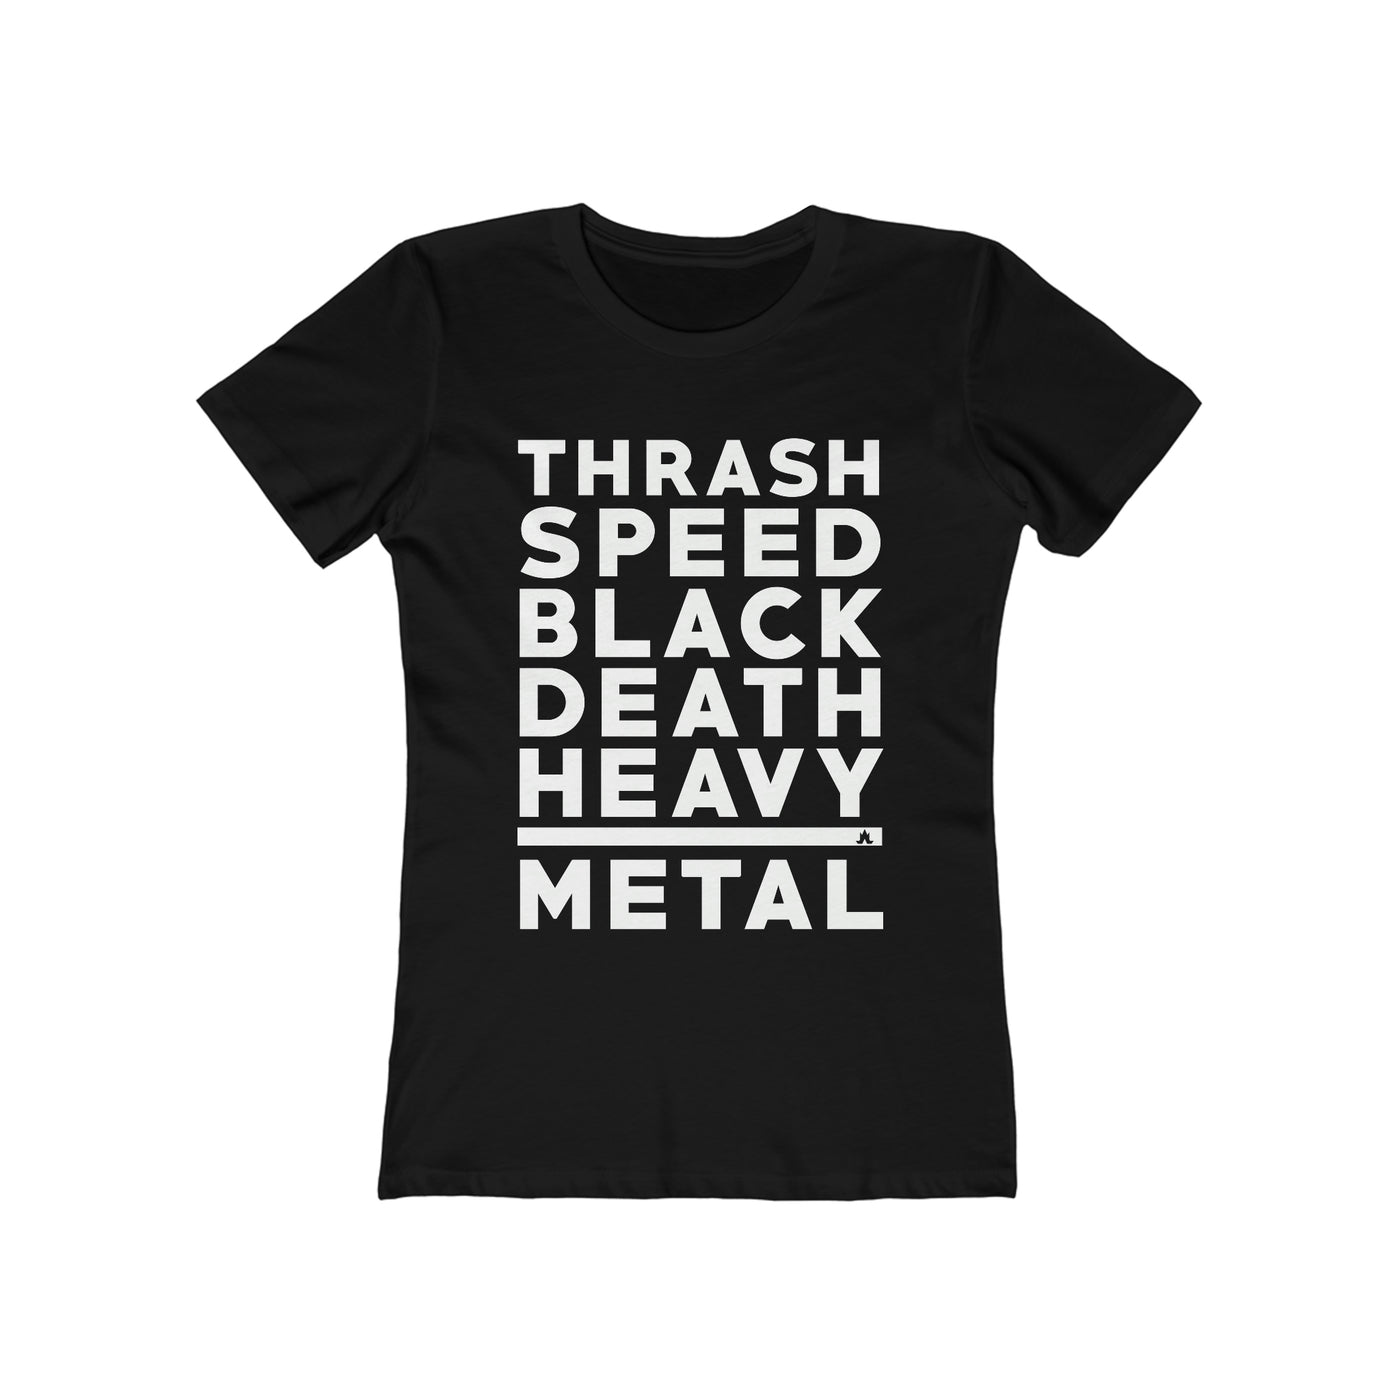 Heavy Metal Tee - Women's